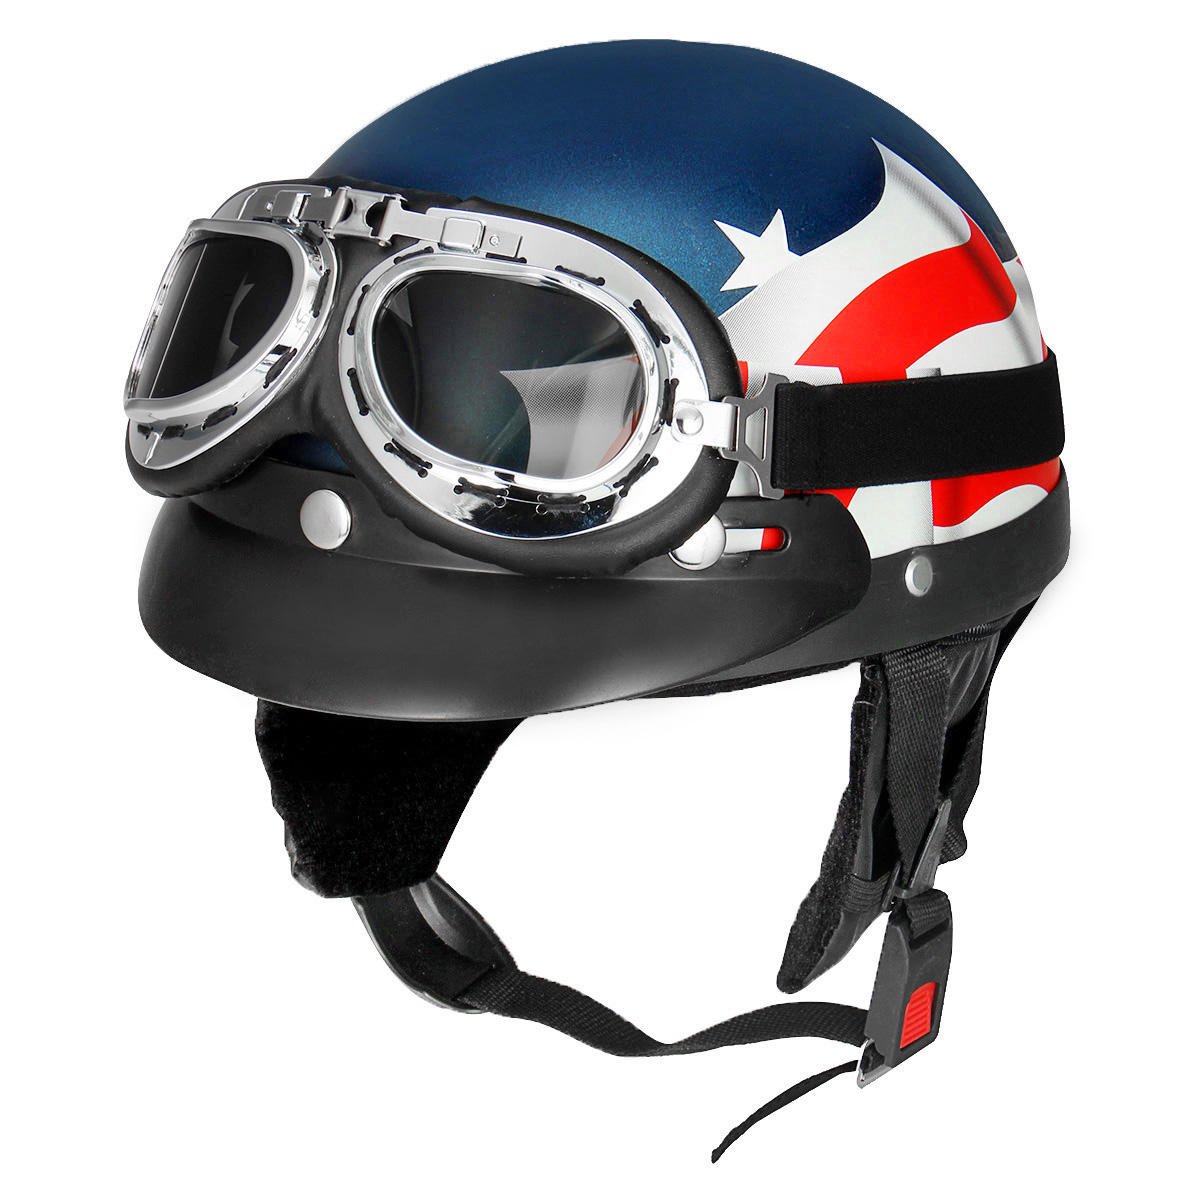 

Ретро США Флаг мотоцикл Половина лица Шлем байкер Скутер с солнцезащитным козырьком УФ-очки Cafe Racer